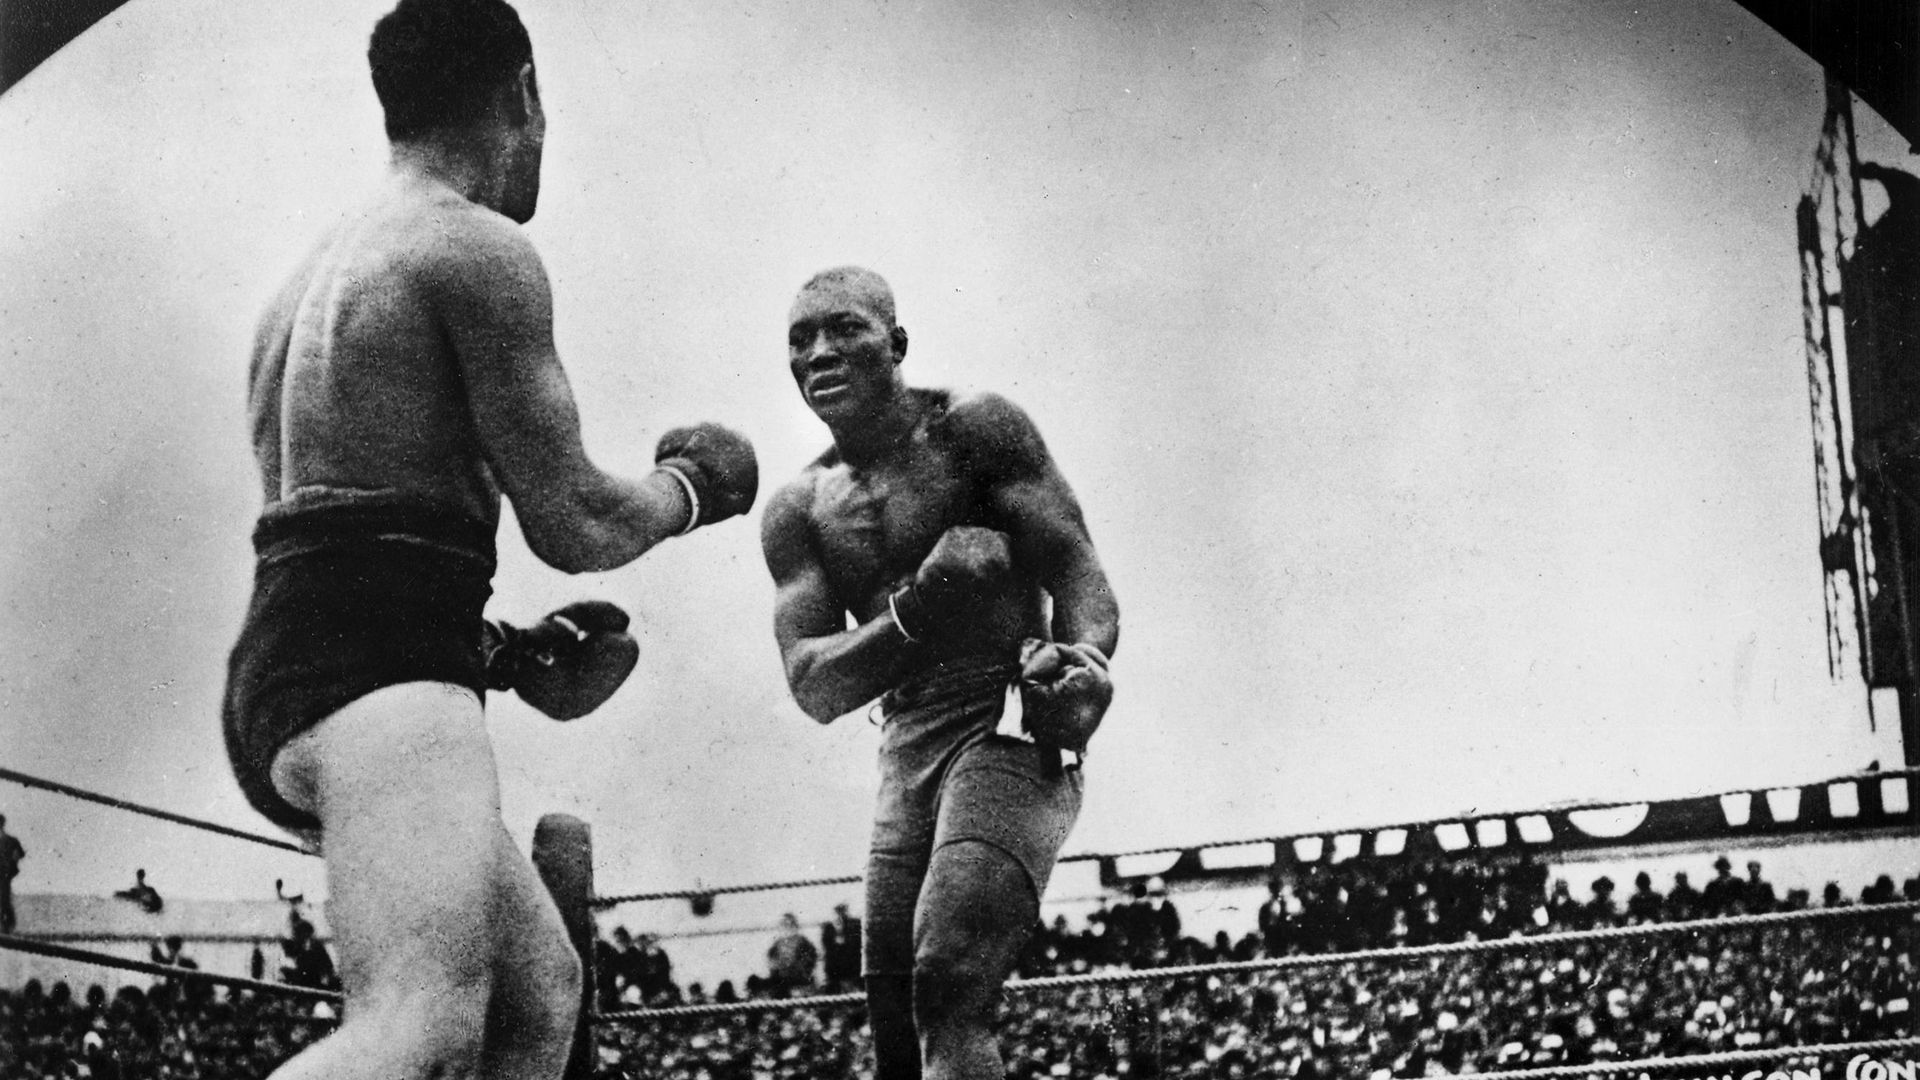 'El combate del siglo', la historia del boxeador negro Jack Johnson, llega al Teatro Valle-Inclán